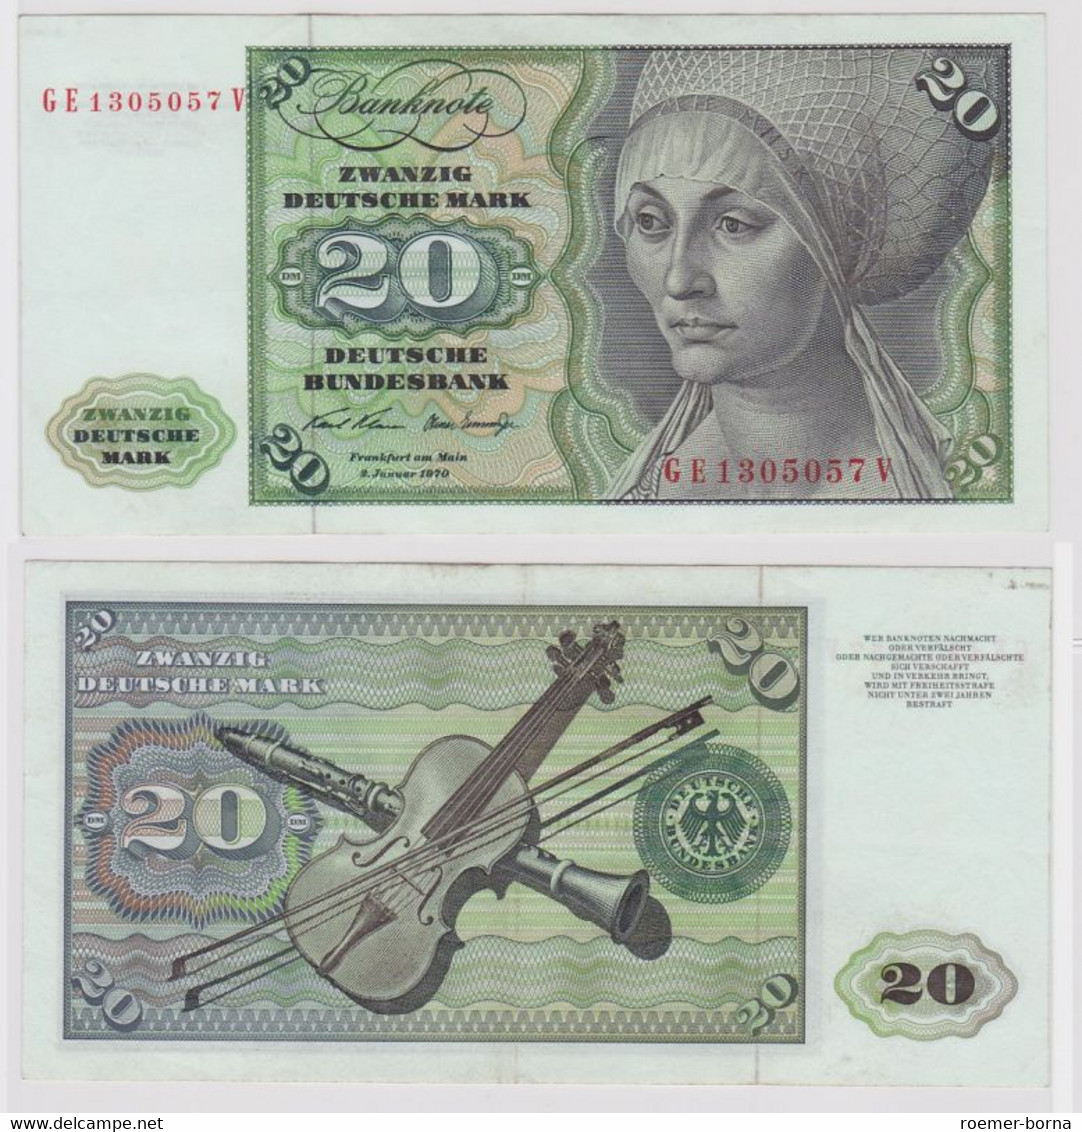 T148152 Banknote 20 DM Deutsche Mark Ro. 271b Schein 2.Jan. 1970 KN GE 1305057 V - 20 DM